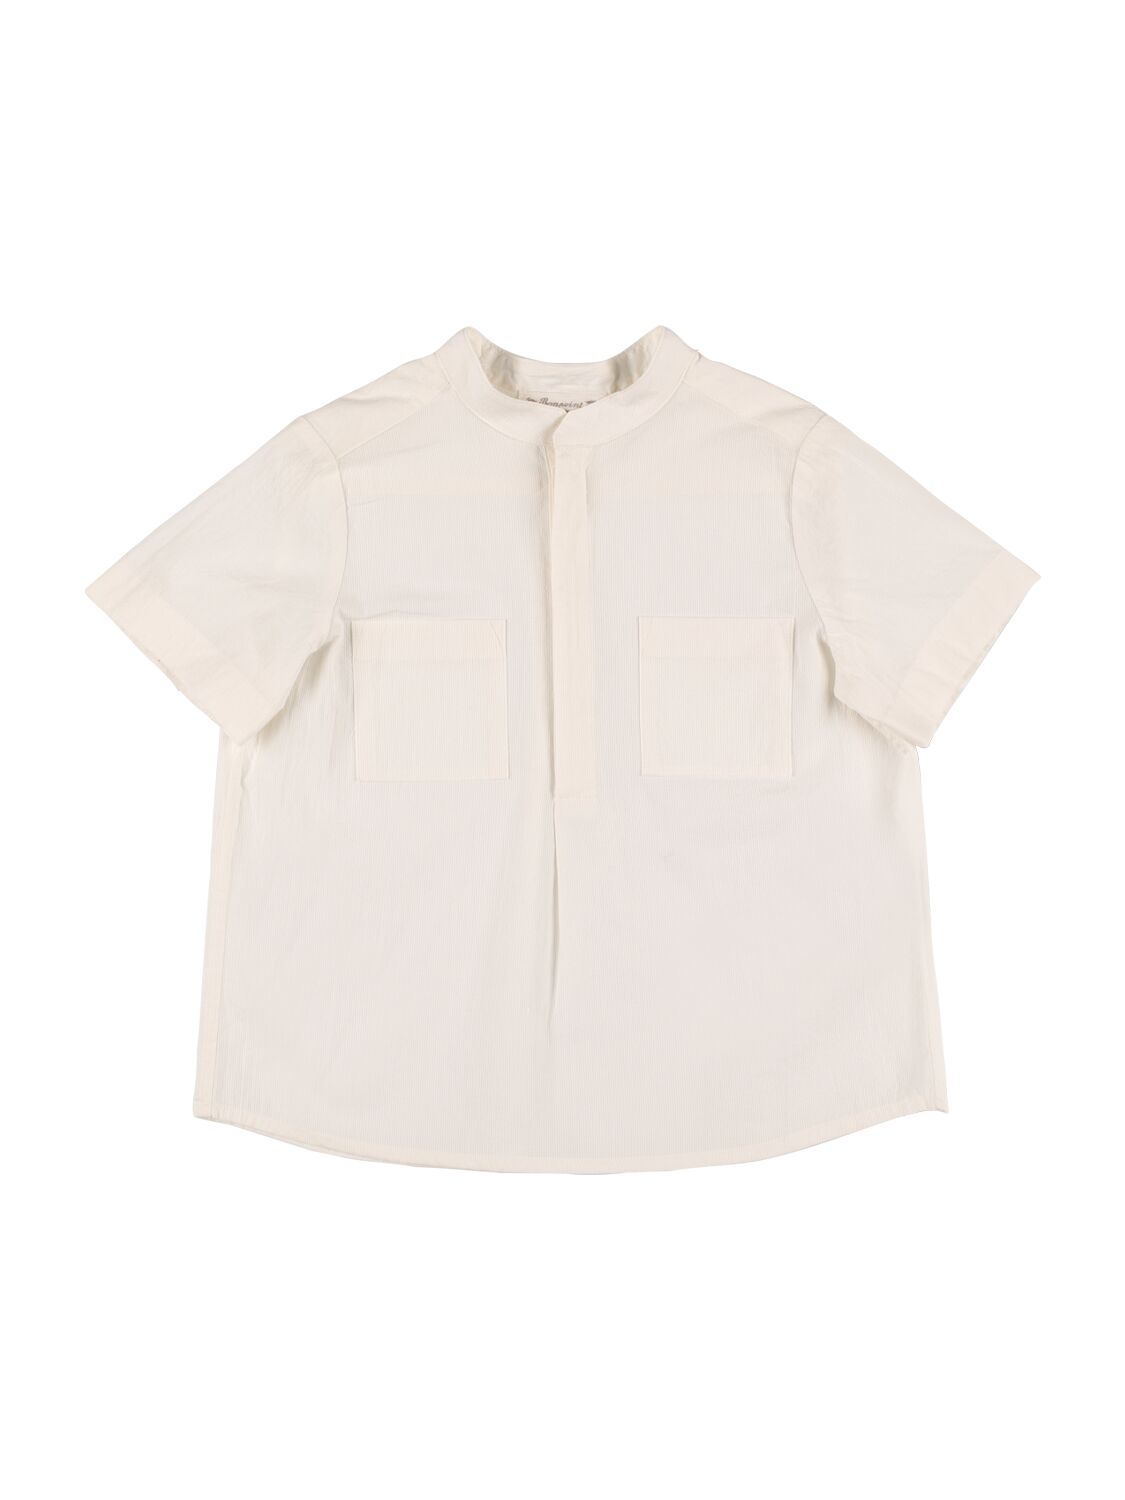 Bonpoint Kids' Cotton Poplin Shirt In White